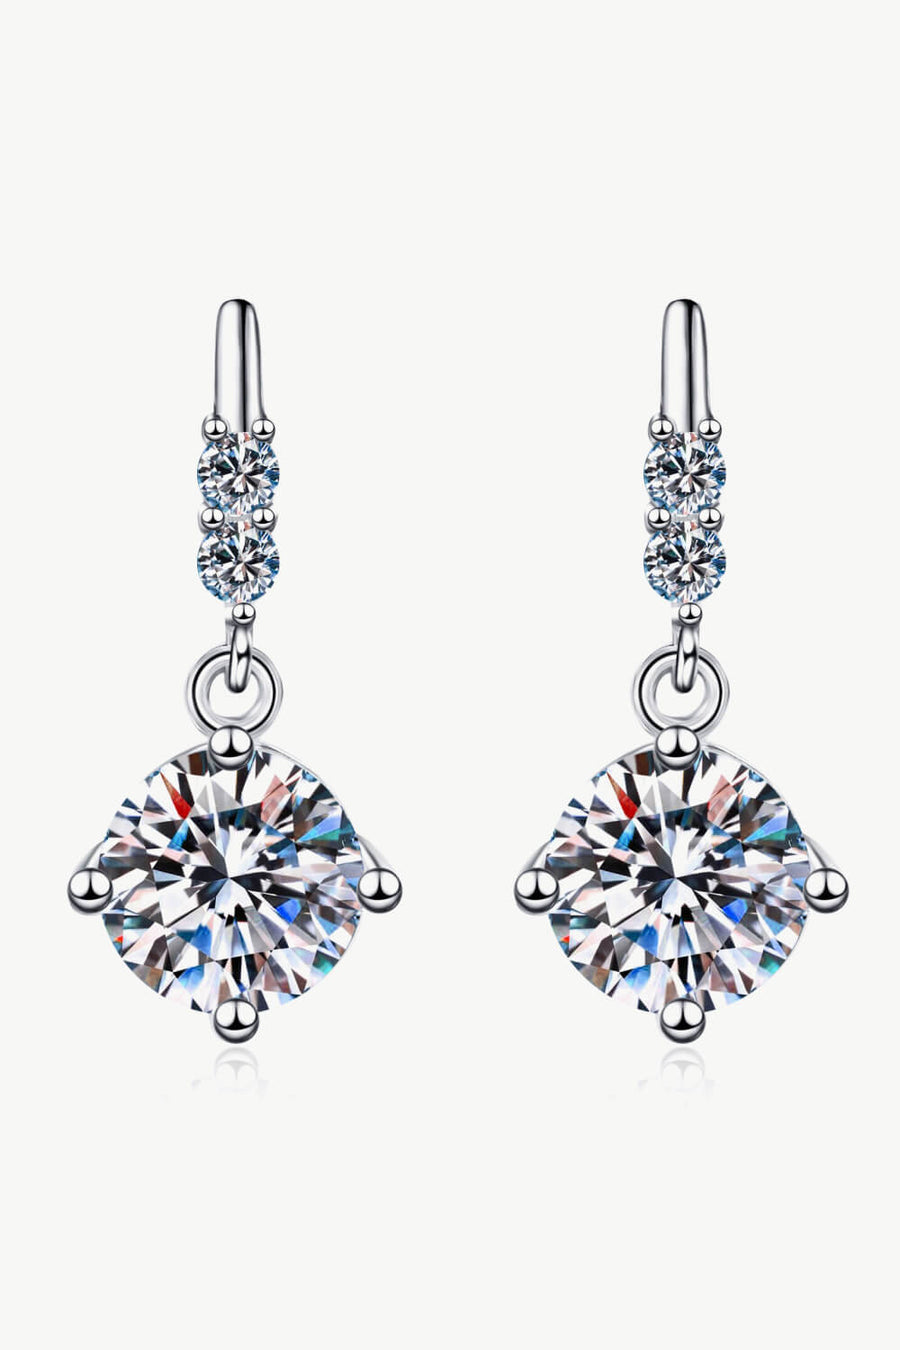 Best Diamond Earrings Jewelry Gifts for Women | 1 Carat Round Diamond Drop Earrings | MASON New York